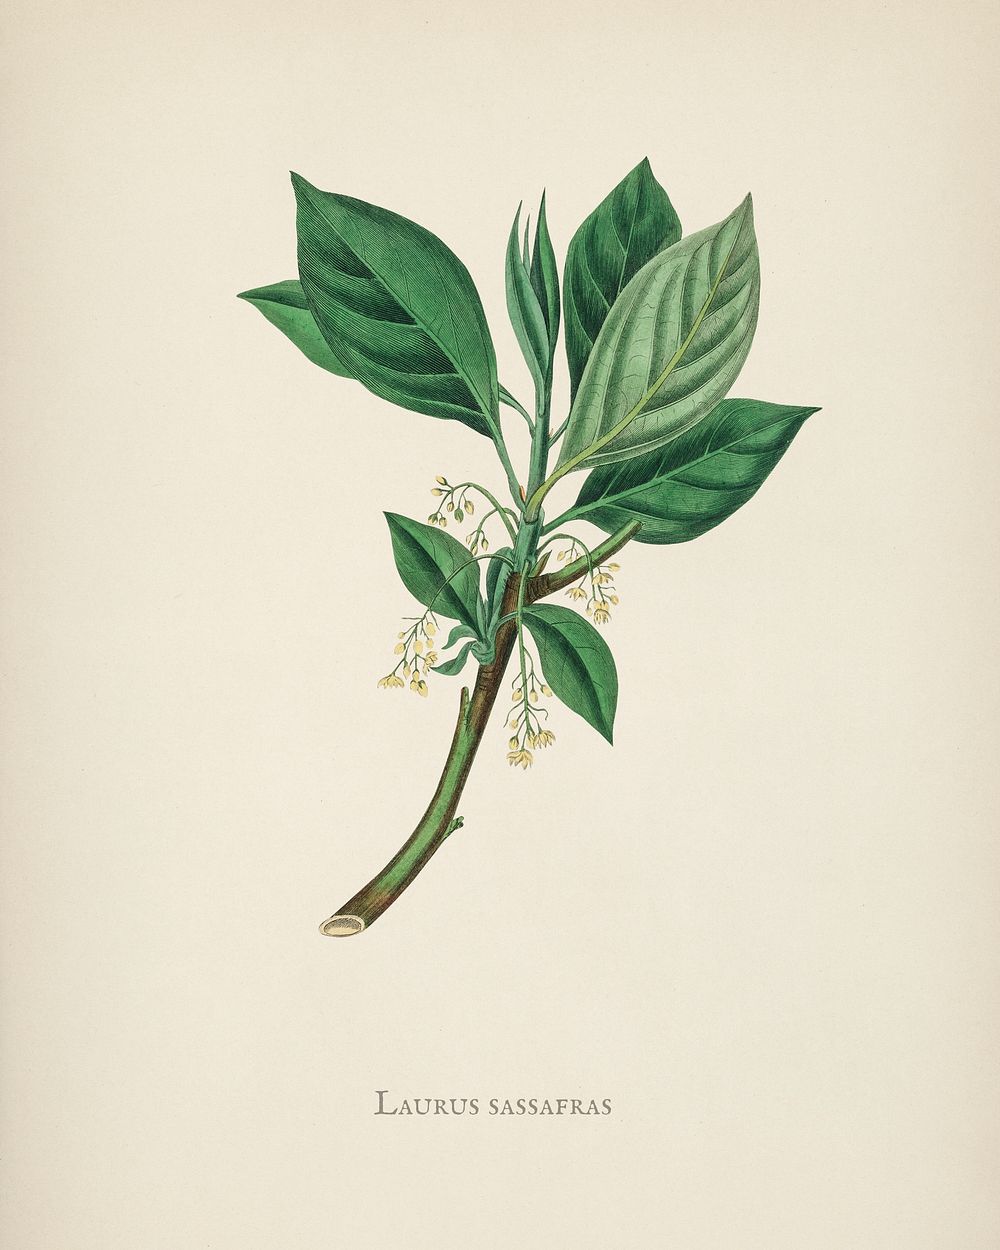 Sassafras (Laurus sassafras) illustration from Medical Botany (1836) by John Stephenson and James Morss Churchill.